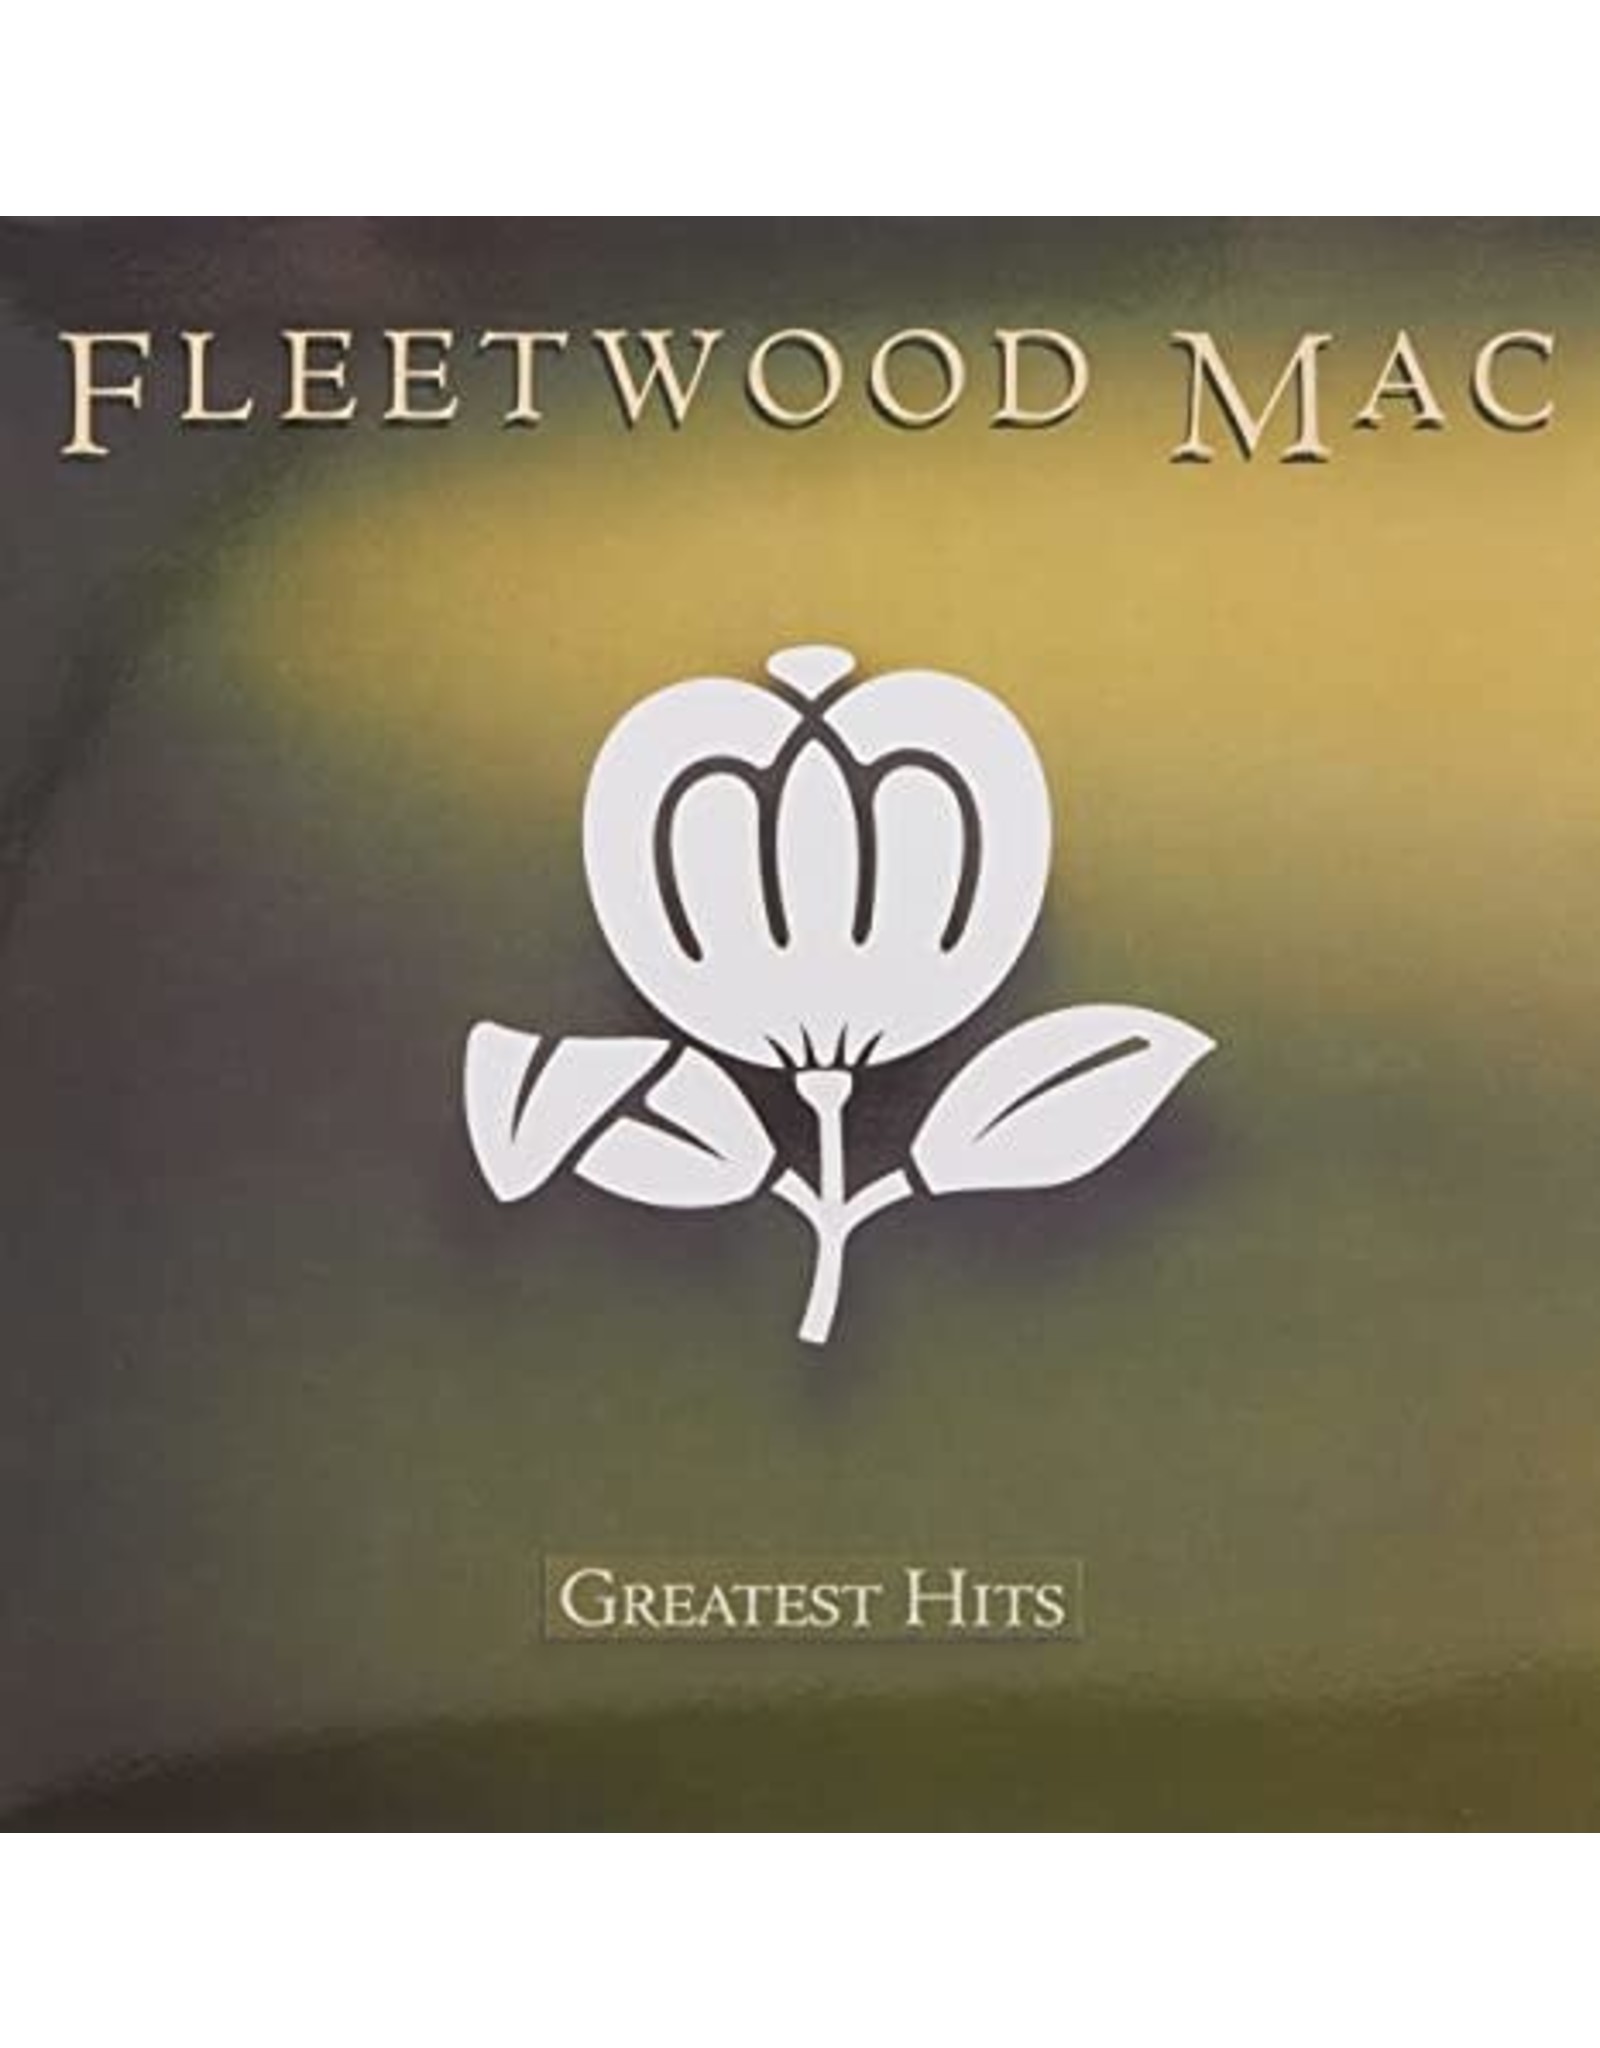 Fleetwood Mac - Greatest Hits CD